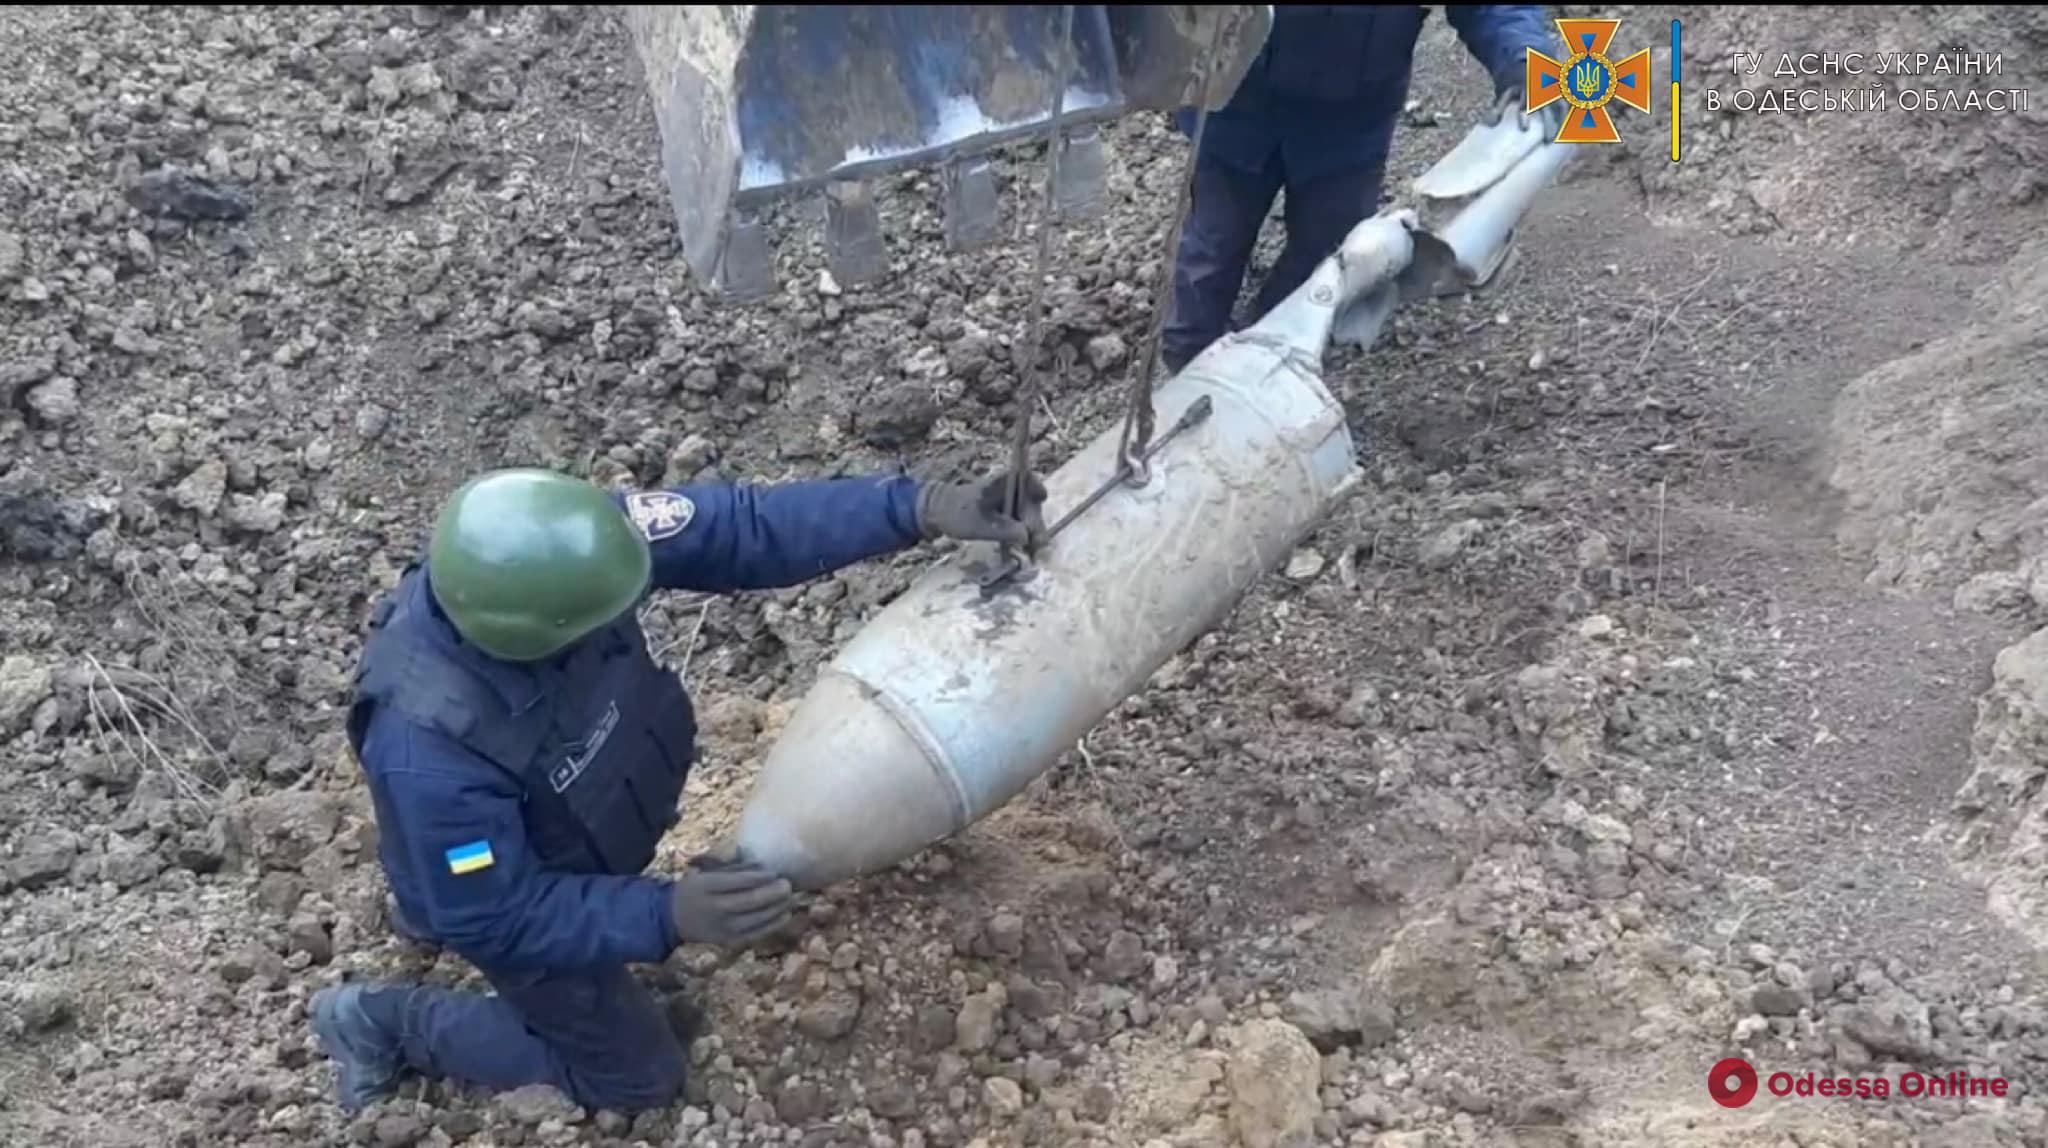 Одесские пиротехники уничтожили авиационную бомбу (фото, видео)